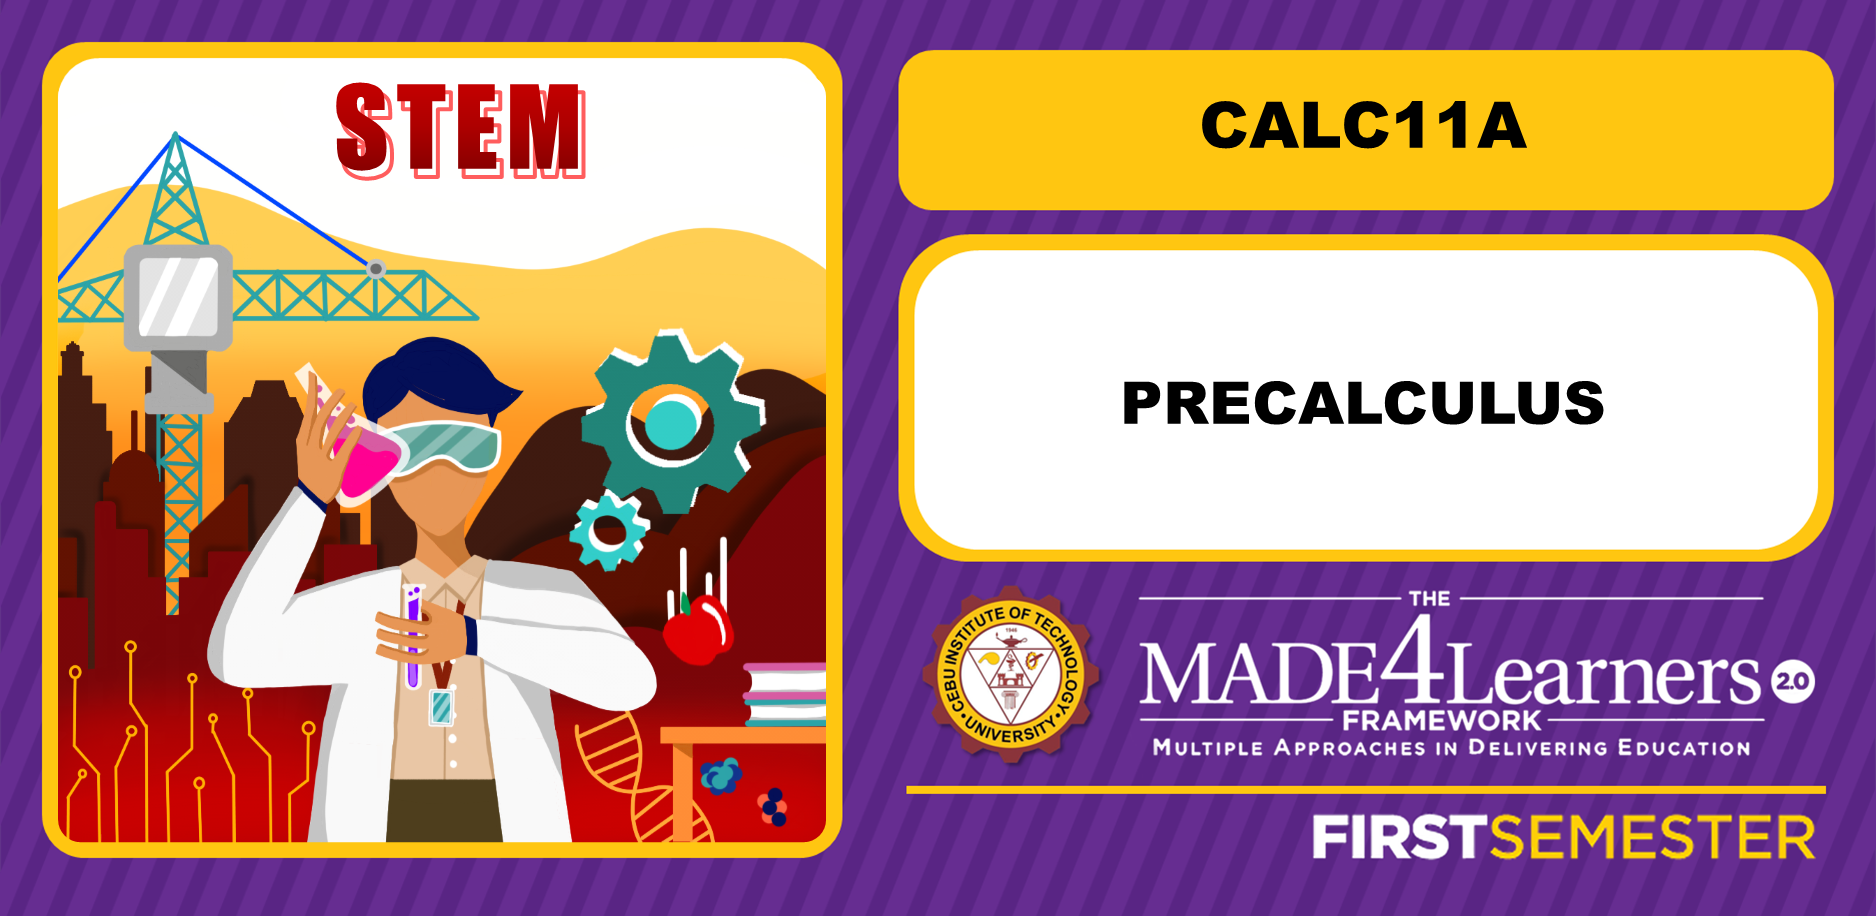 CALC11A: Precalculus